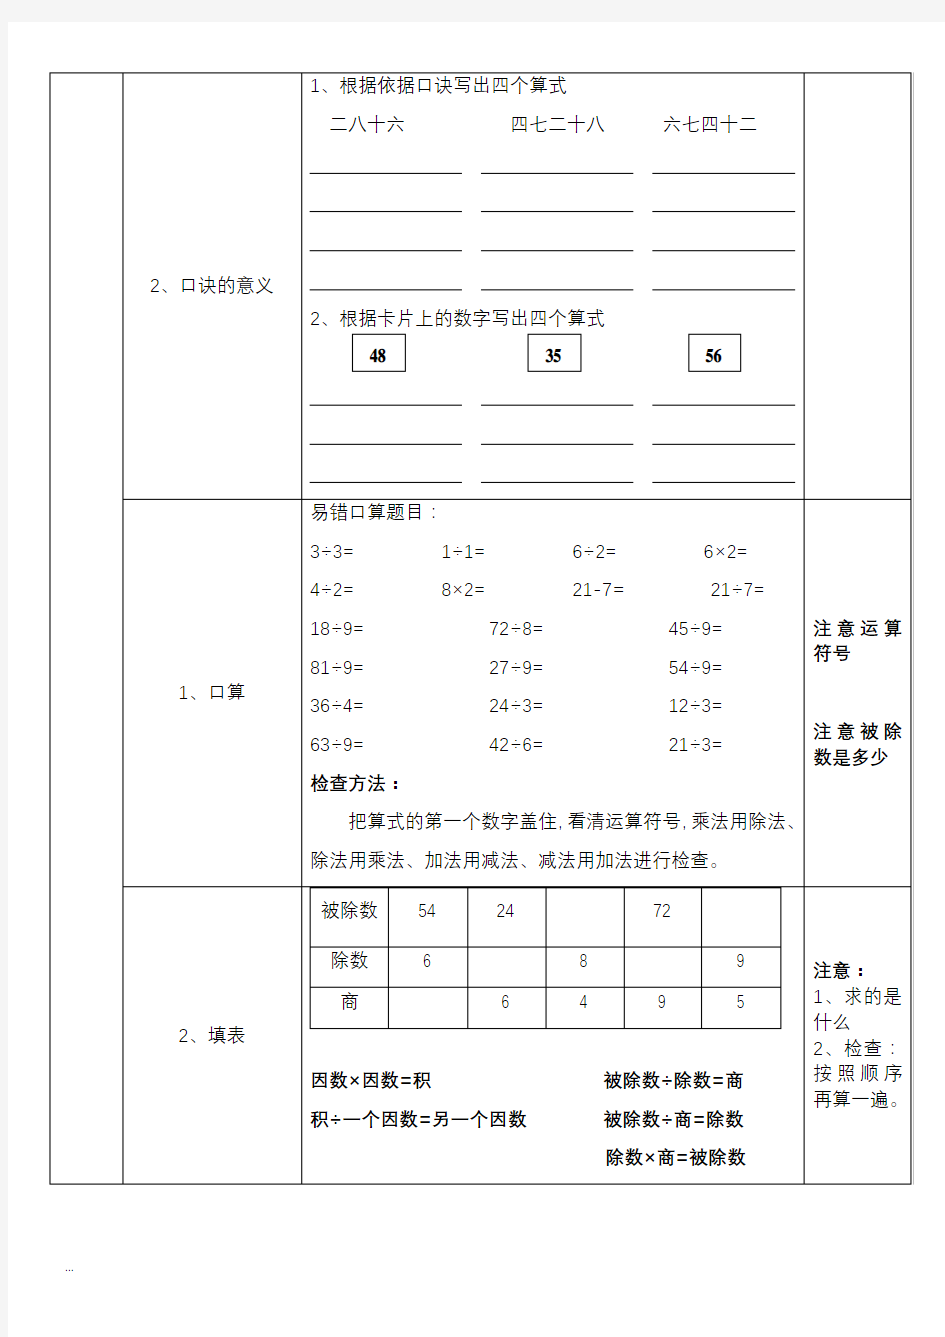 【深圳市】小学二年级下册数学练习题